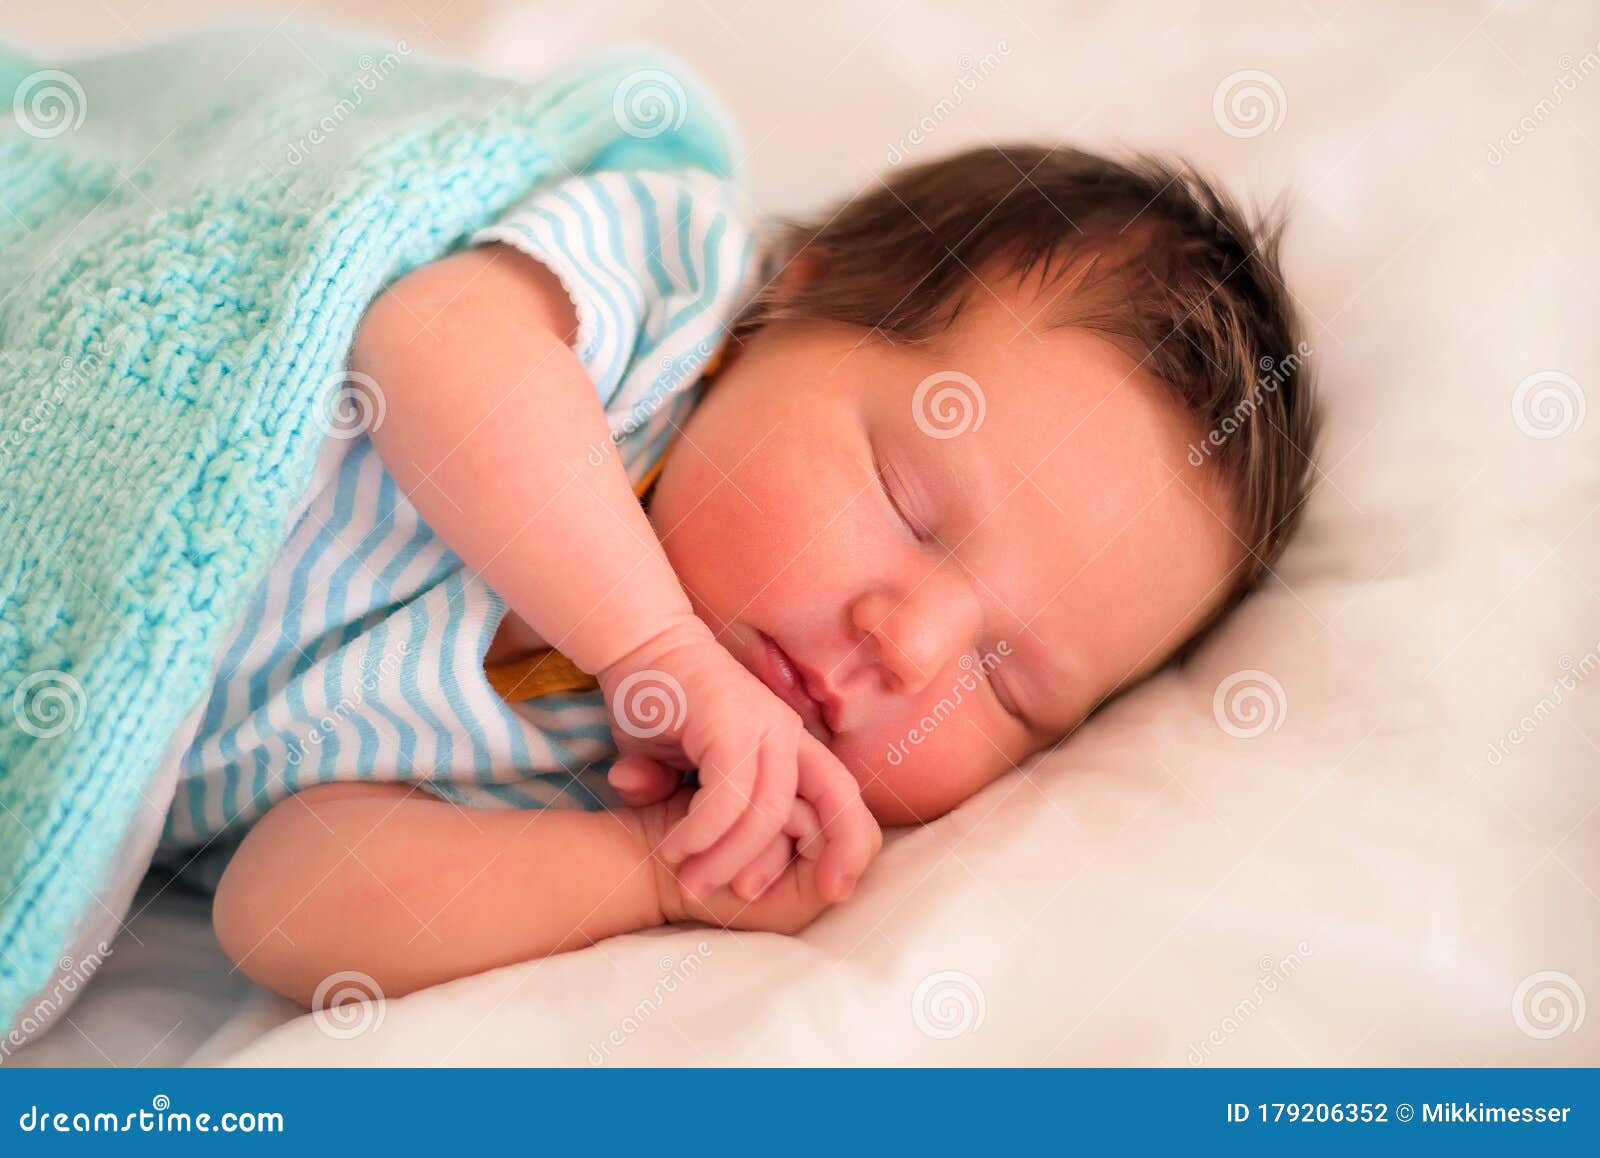 Bebé recién nacido niño en cama. Niño recién nacido duerme bajo